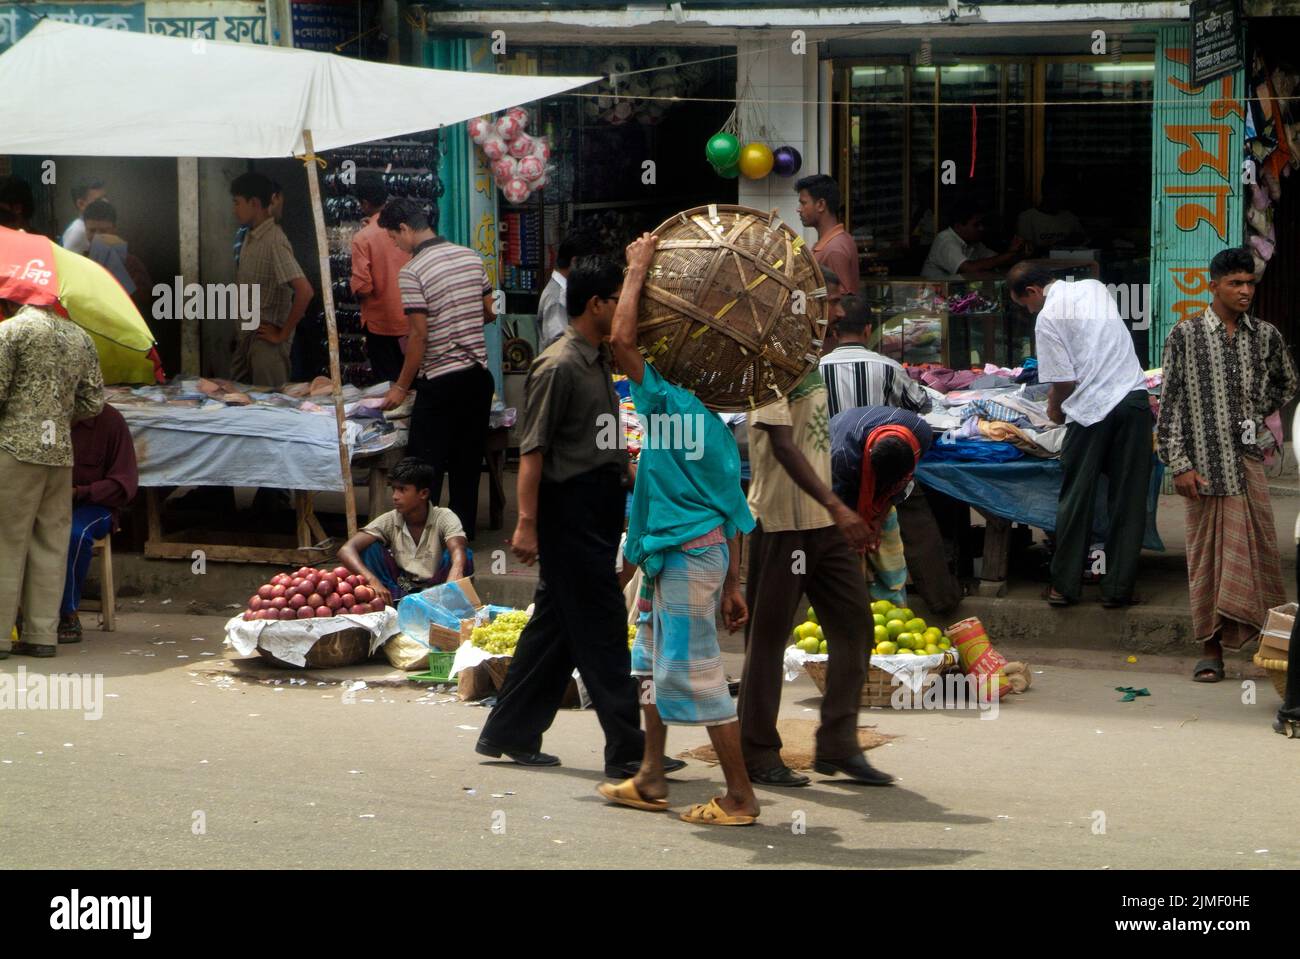 Dhaka, Bangladesh - 17 septembre 2007: Des gens non identifiés sur le marché traditionnel des rues dans la capitale Banque D'Images